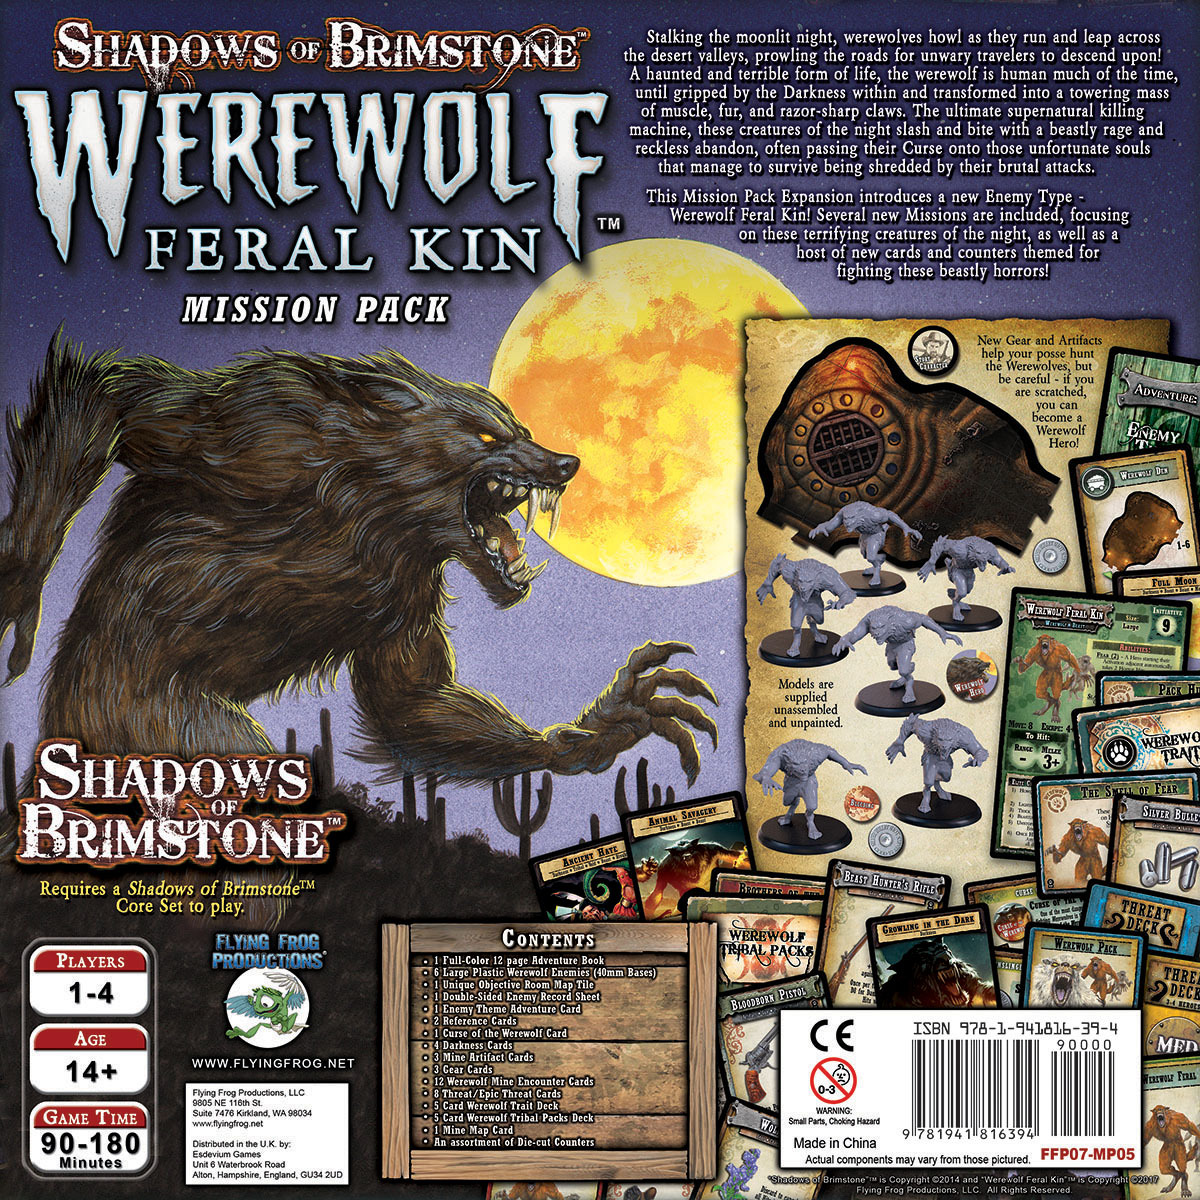 Shadows of Brimstone Werewolf Ferral Kin